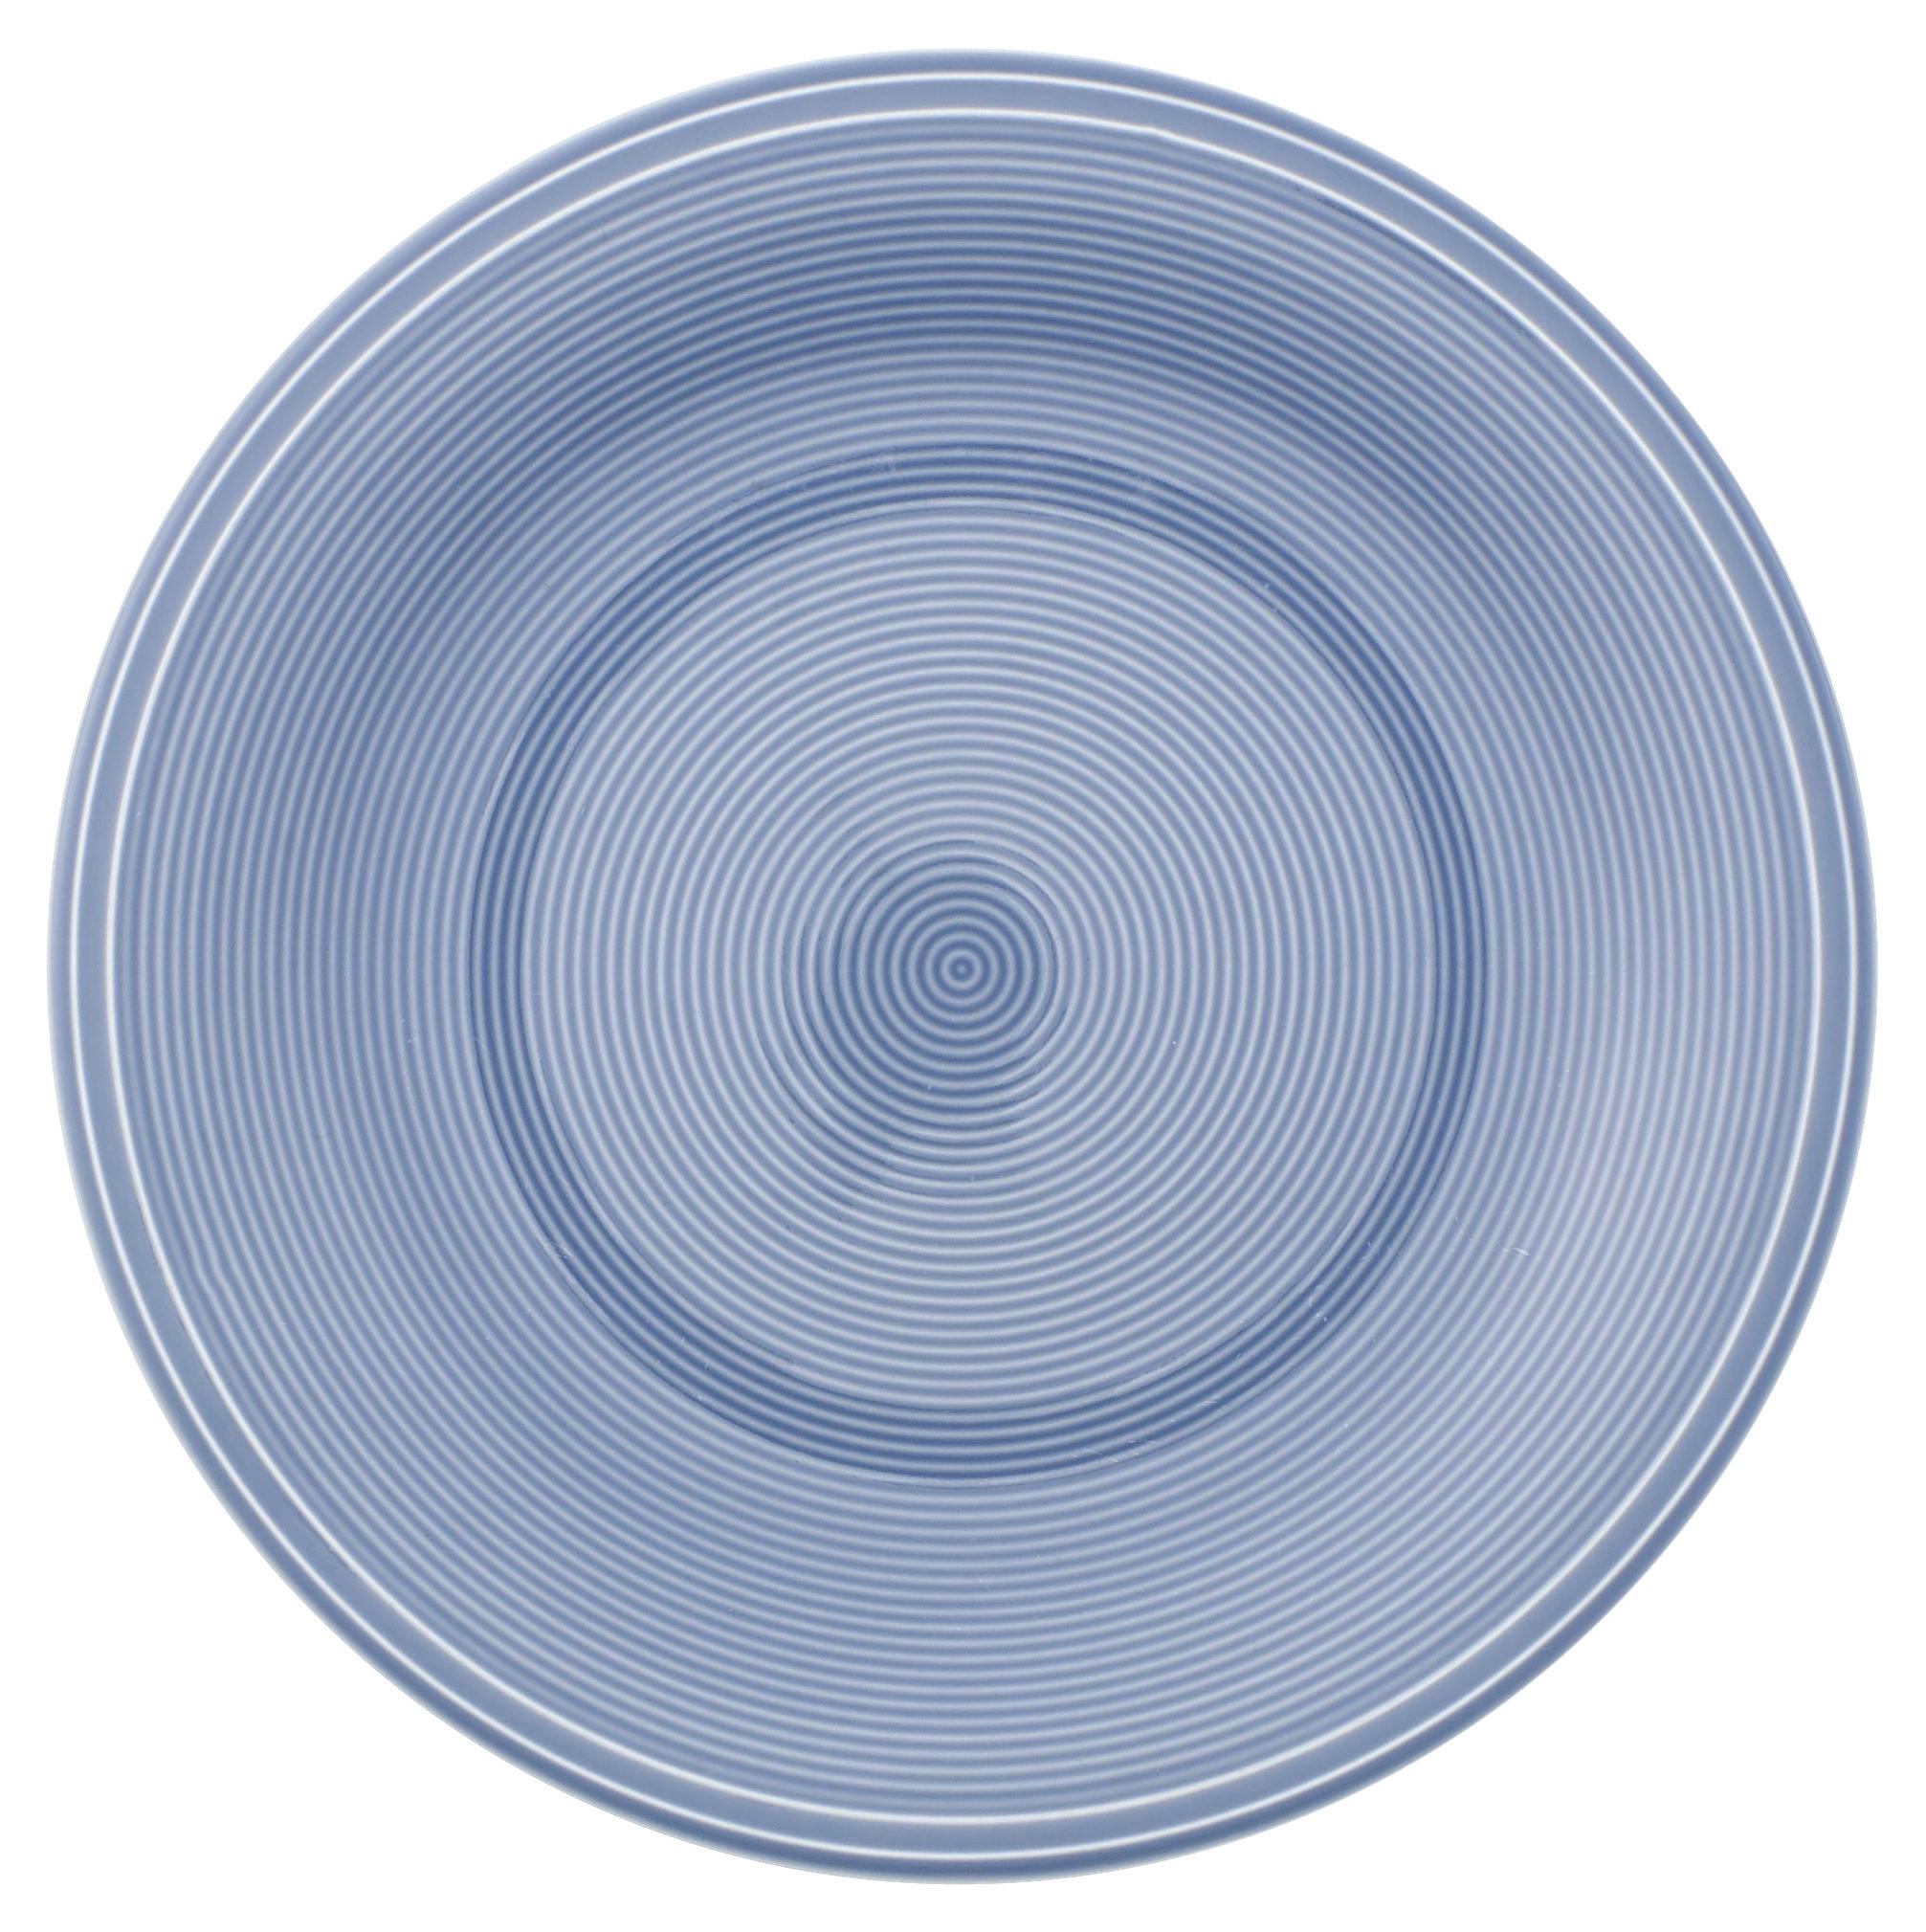 SPEISETELLER Color Loop 28 cm  - Hellblau, KONVENTIONELL, Keramik (28cm) - like.Villeroy & Boch